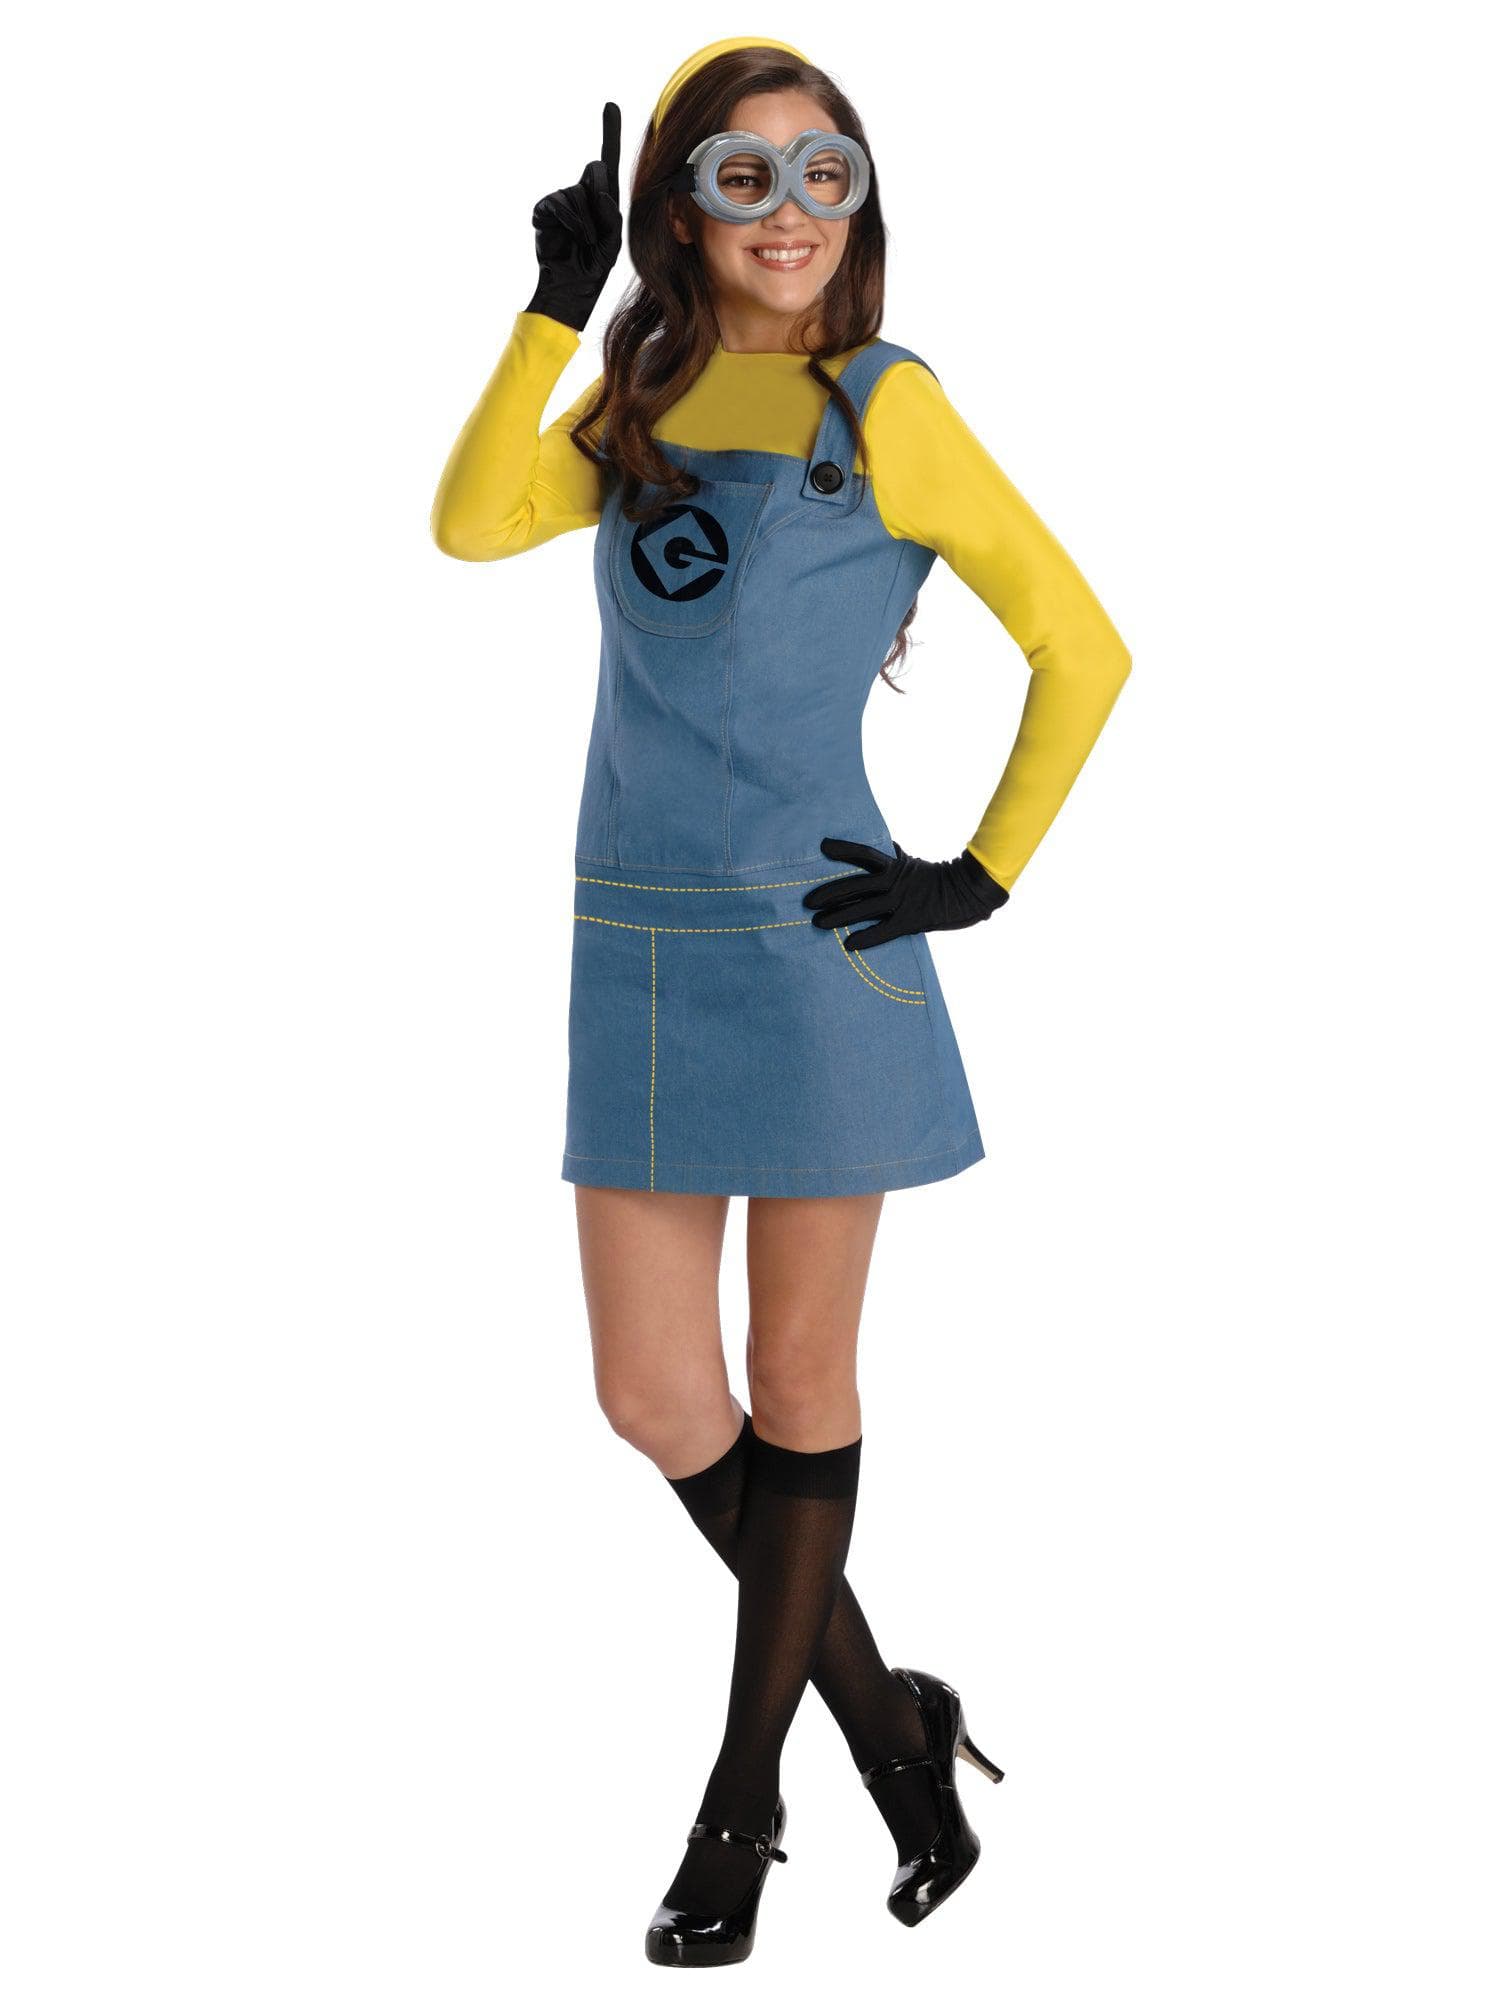 Women's Despicable Me Minion Costume - costumes.com